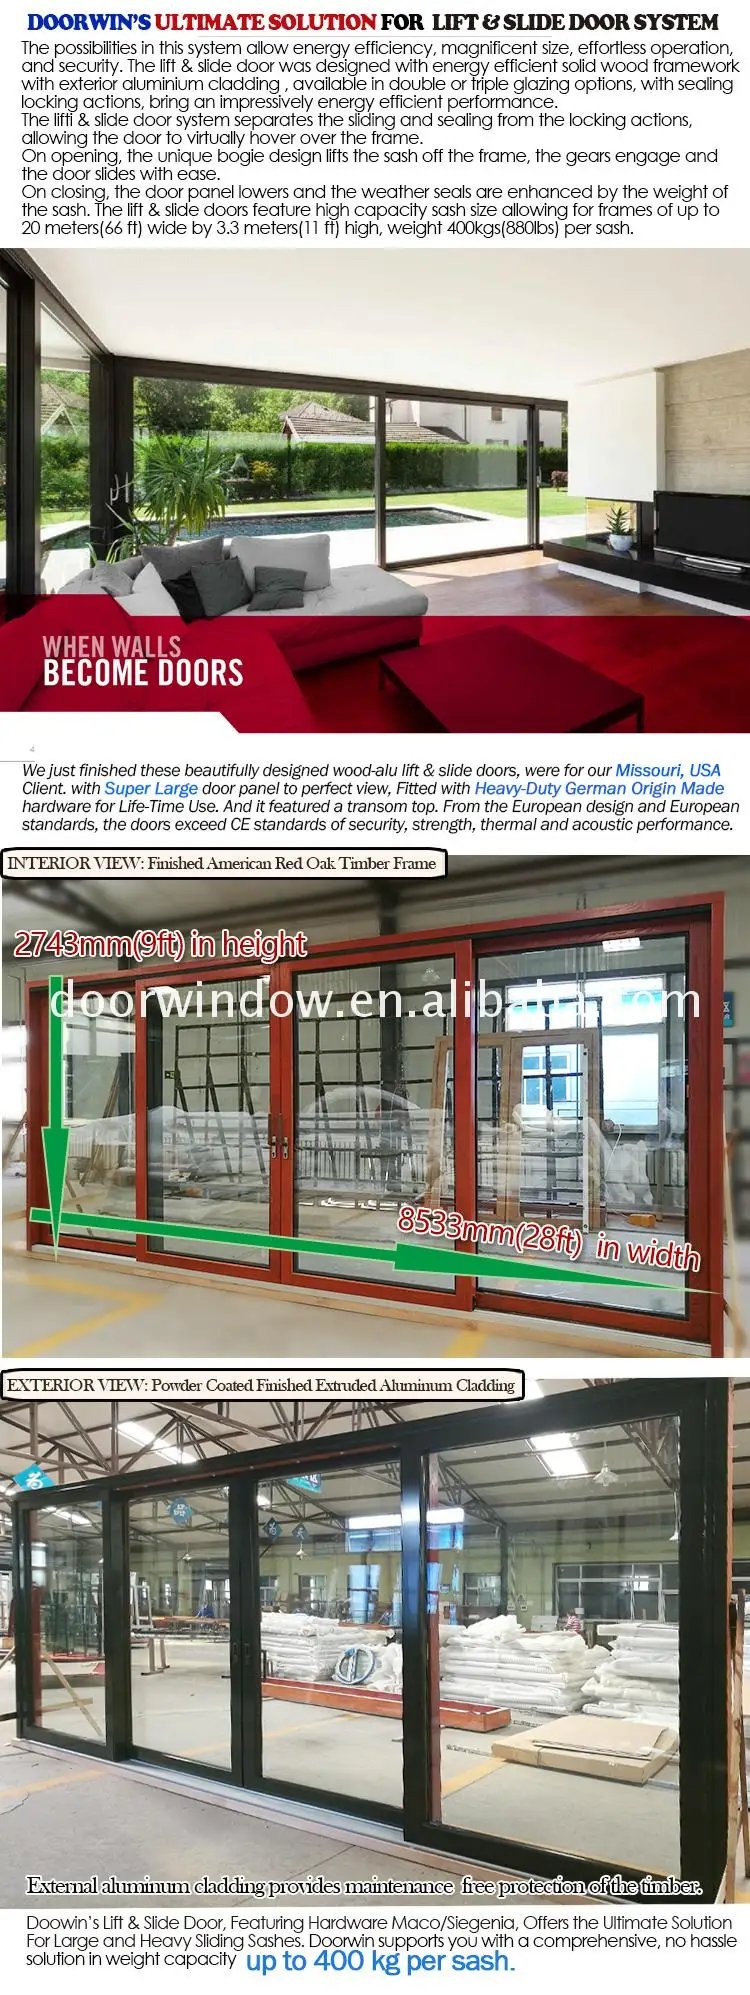 Used commercial glass doors teak wood front door design swing